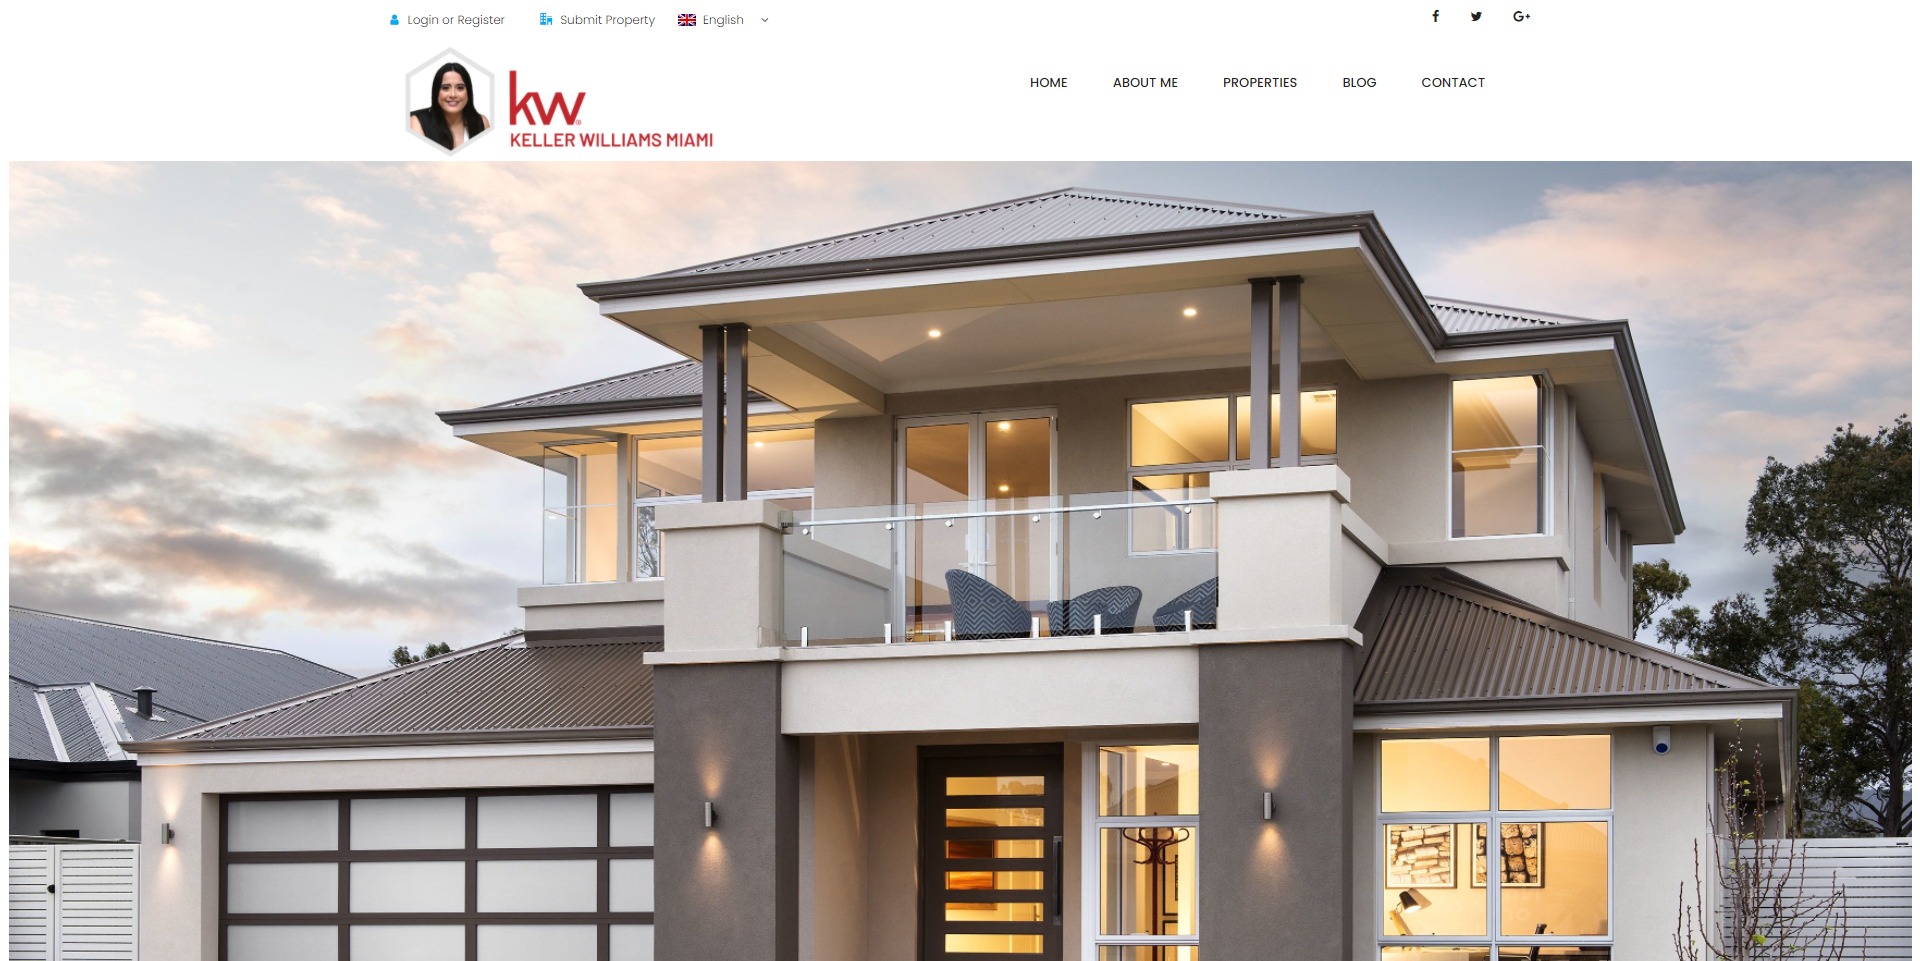 Real Estate Agency Website Design